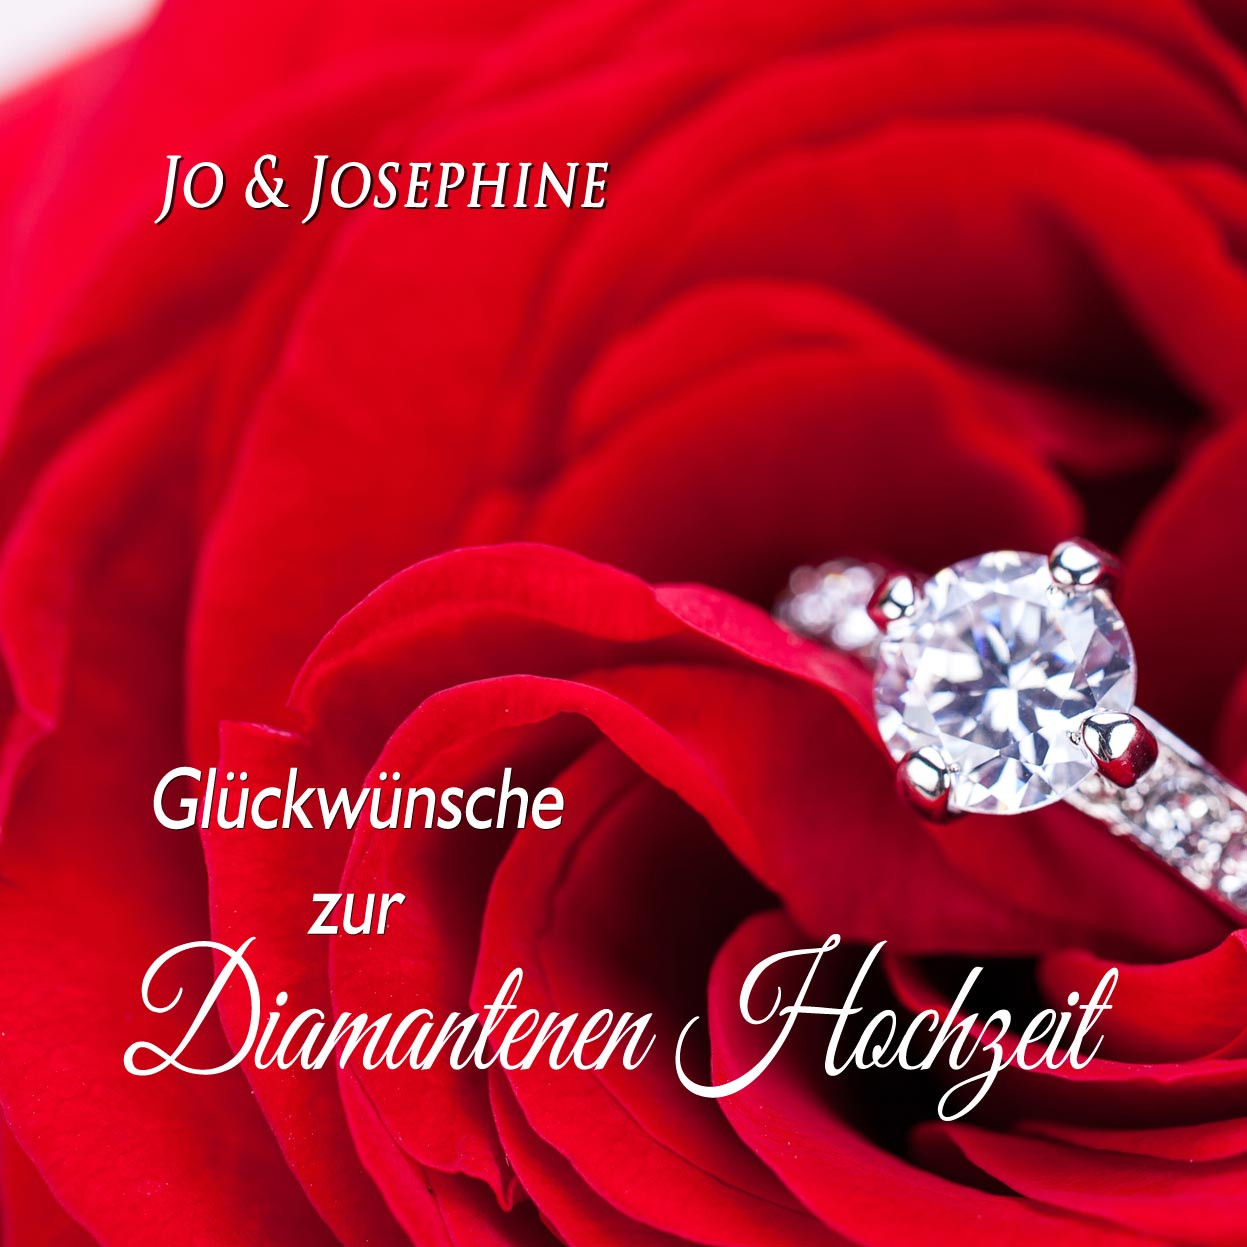 Glückwünsche Zur Diamantenen Hochzeit
 "Glückwünsche zur Diamantenen Hochzeit" Lied als MP3